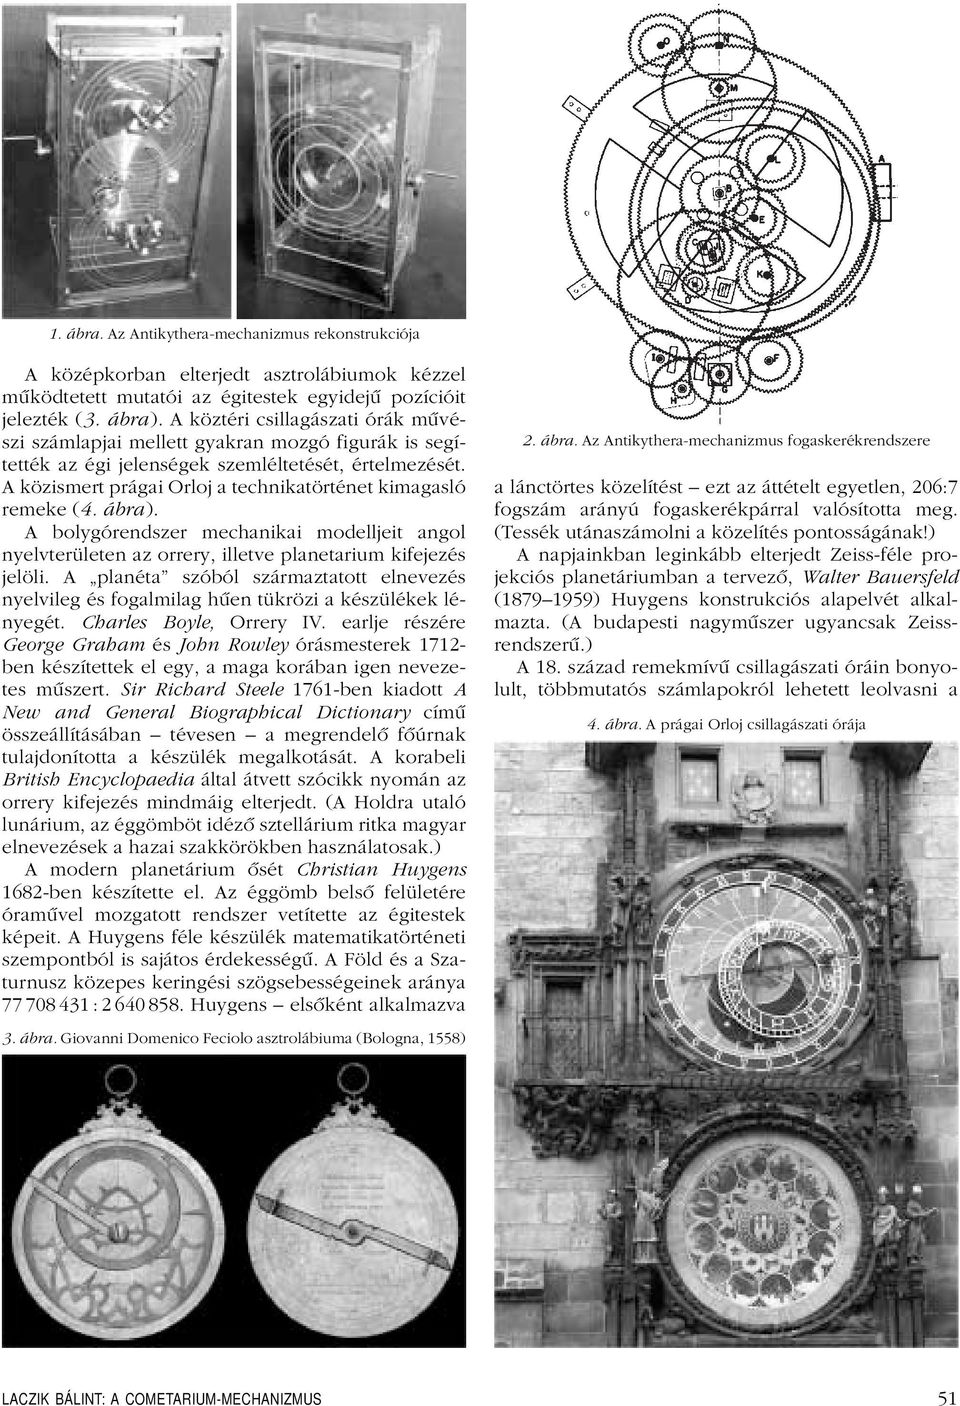 A közismert prágai Orloj a technikatörténet kimagasló remeke (4.ábra). A bolygórendszer mechanikai modelljeit angol nyelvterületen az orrery, illetve planetarium kifejezés jelöli.